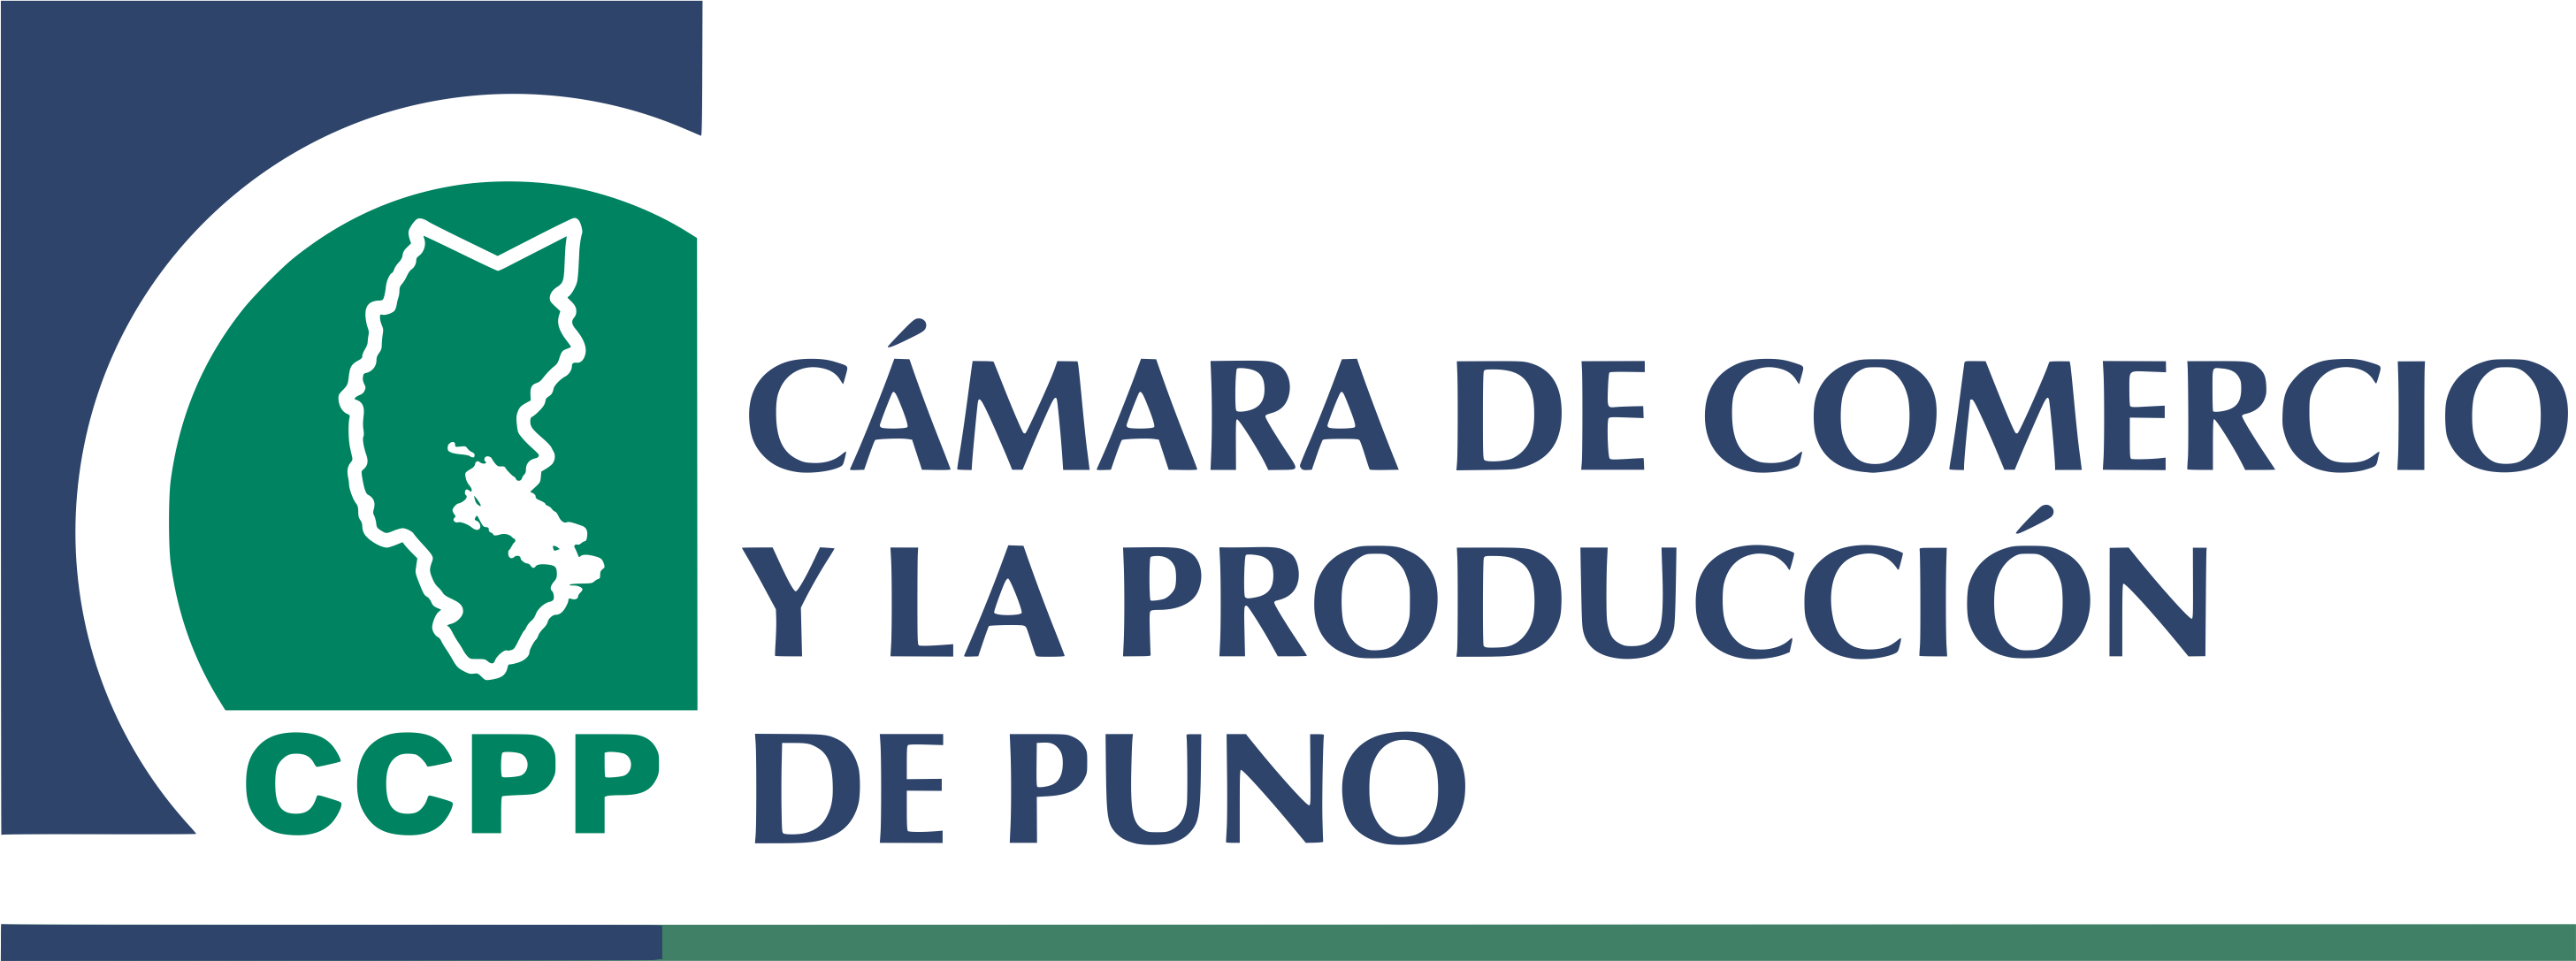 CAMARA DE COMERCIO Y PRODUCCION DE PUNO